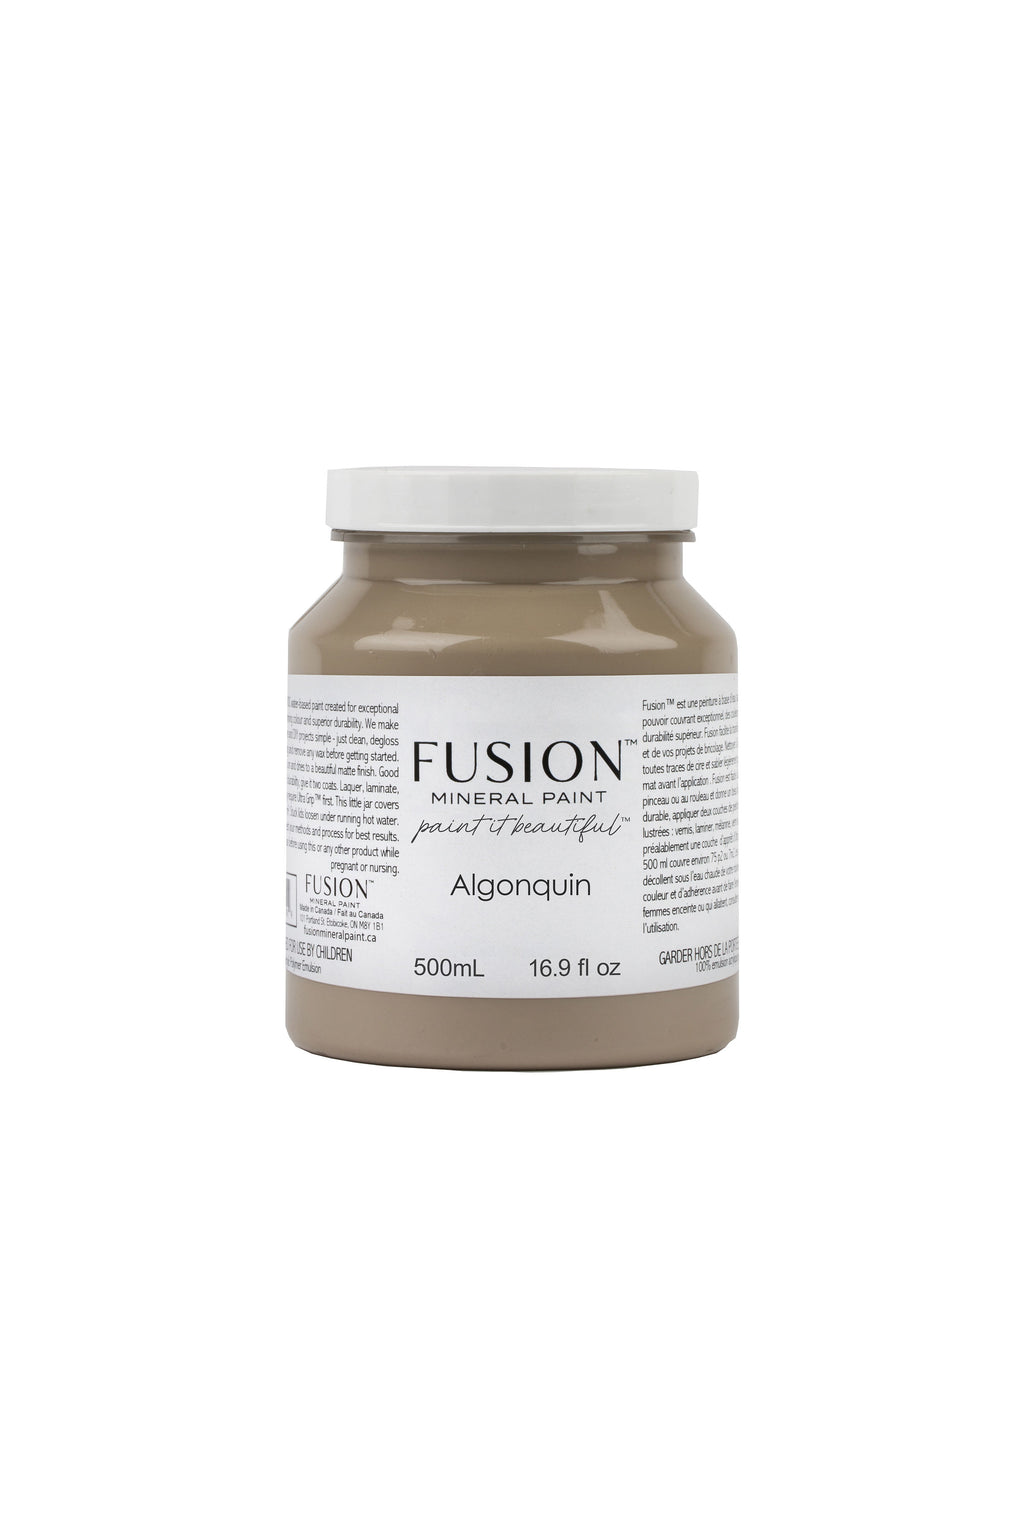 Algonquin Fusion Mineral Paint - Pint